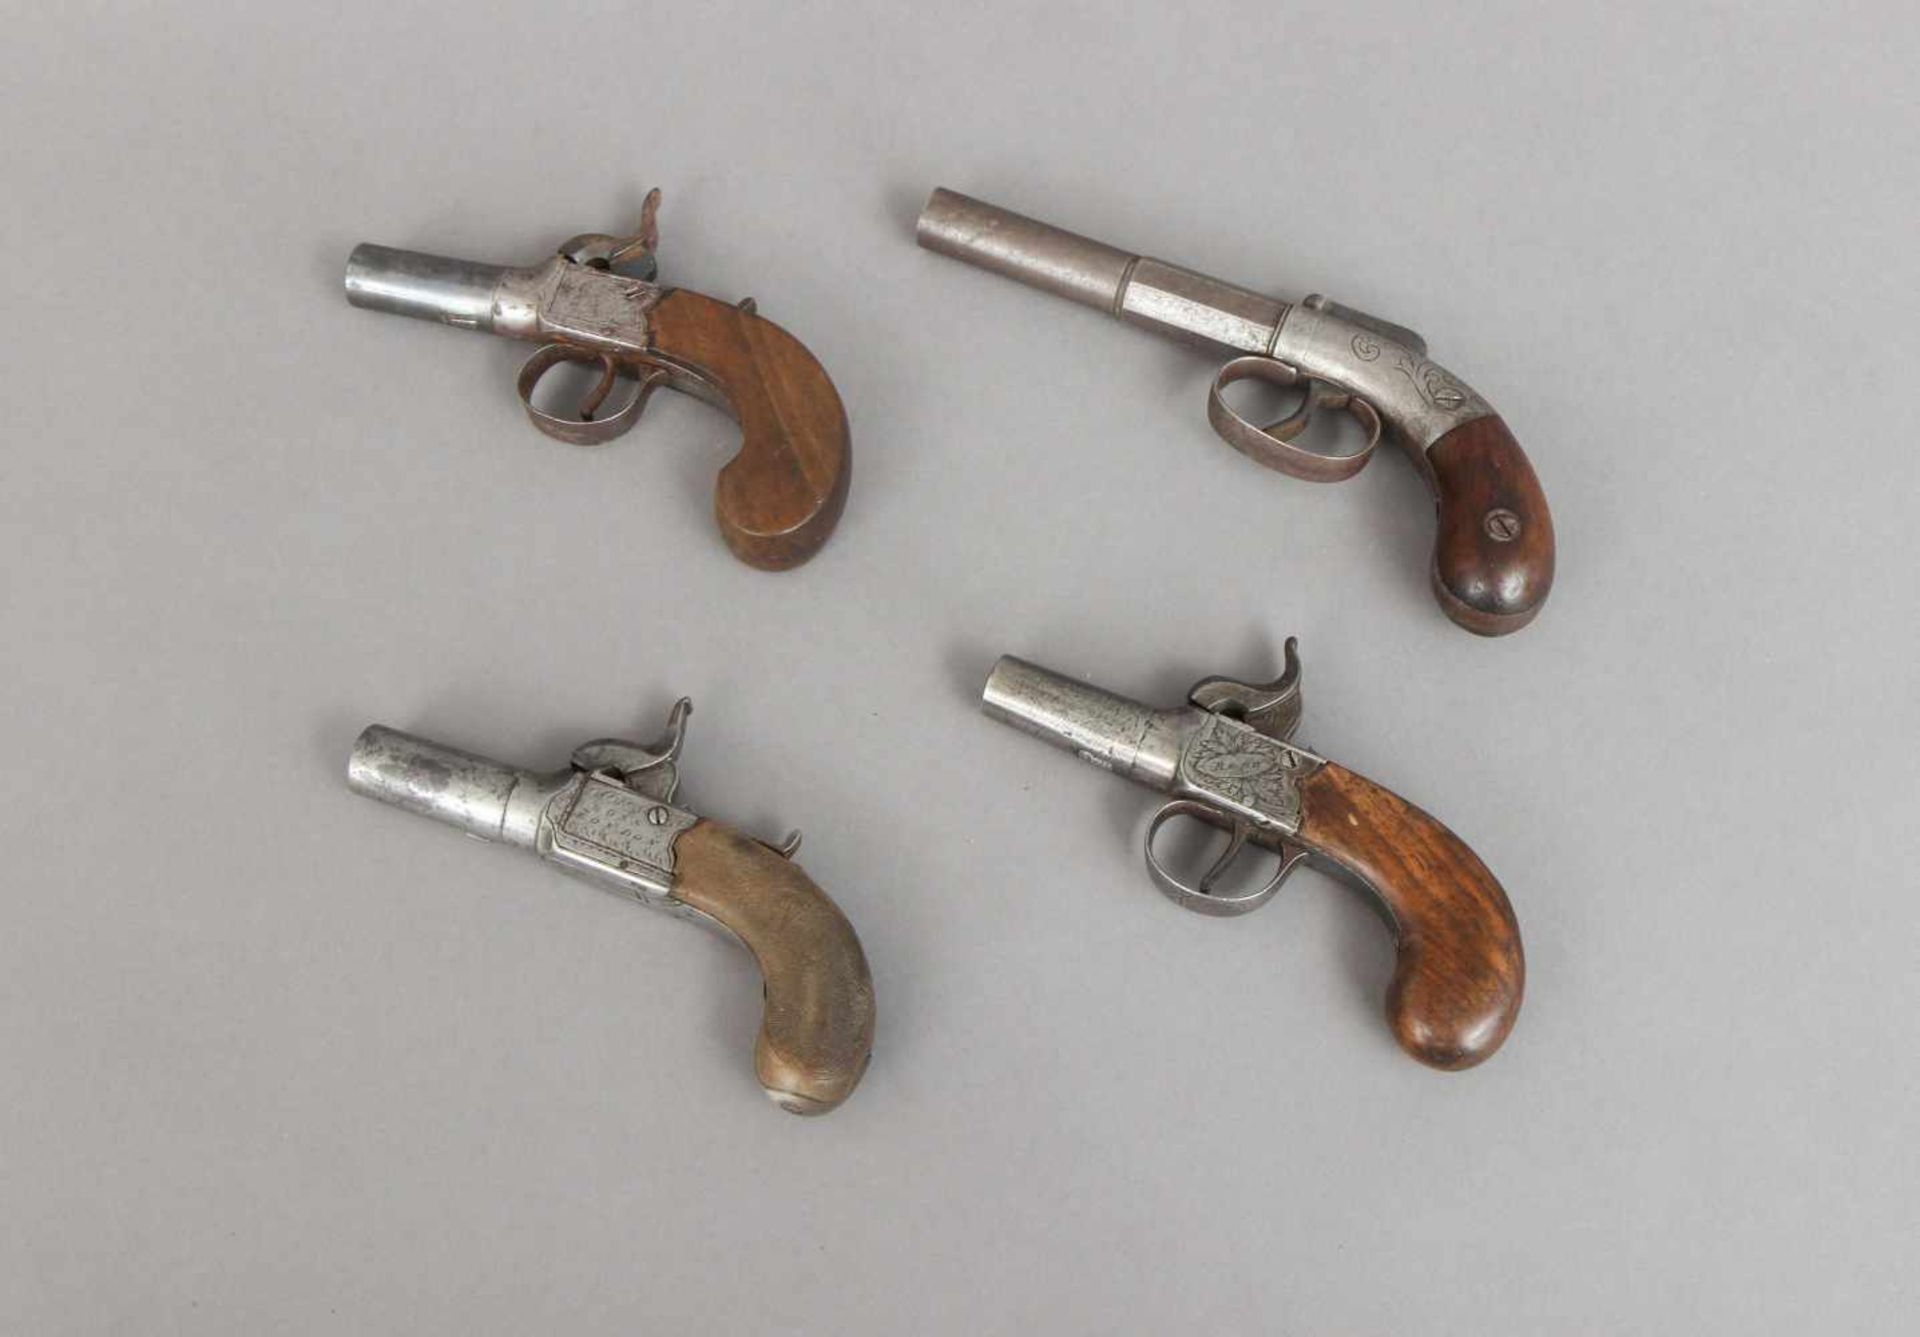 4 Perkussions-Taschenpistolen des 19. JahrhundertsEngland, ca. 1840-50, Hersteller Wednesbury, - Bild 2 aus 2